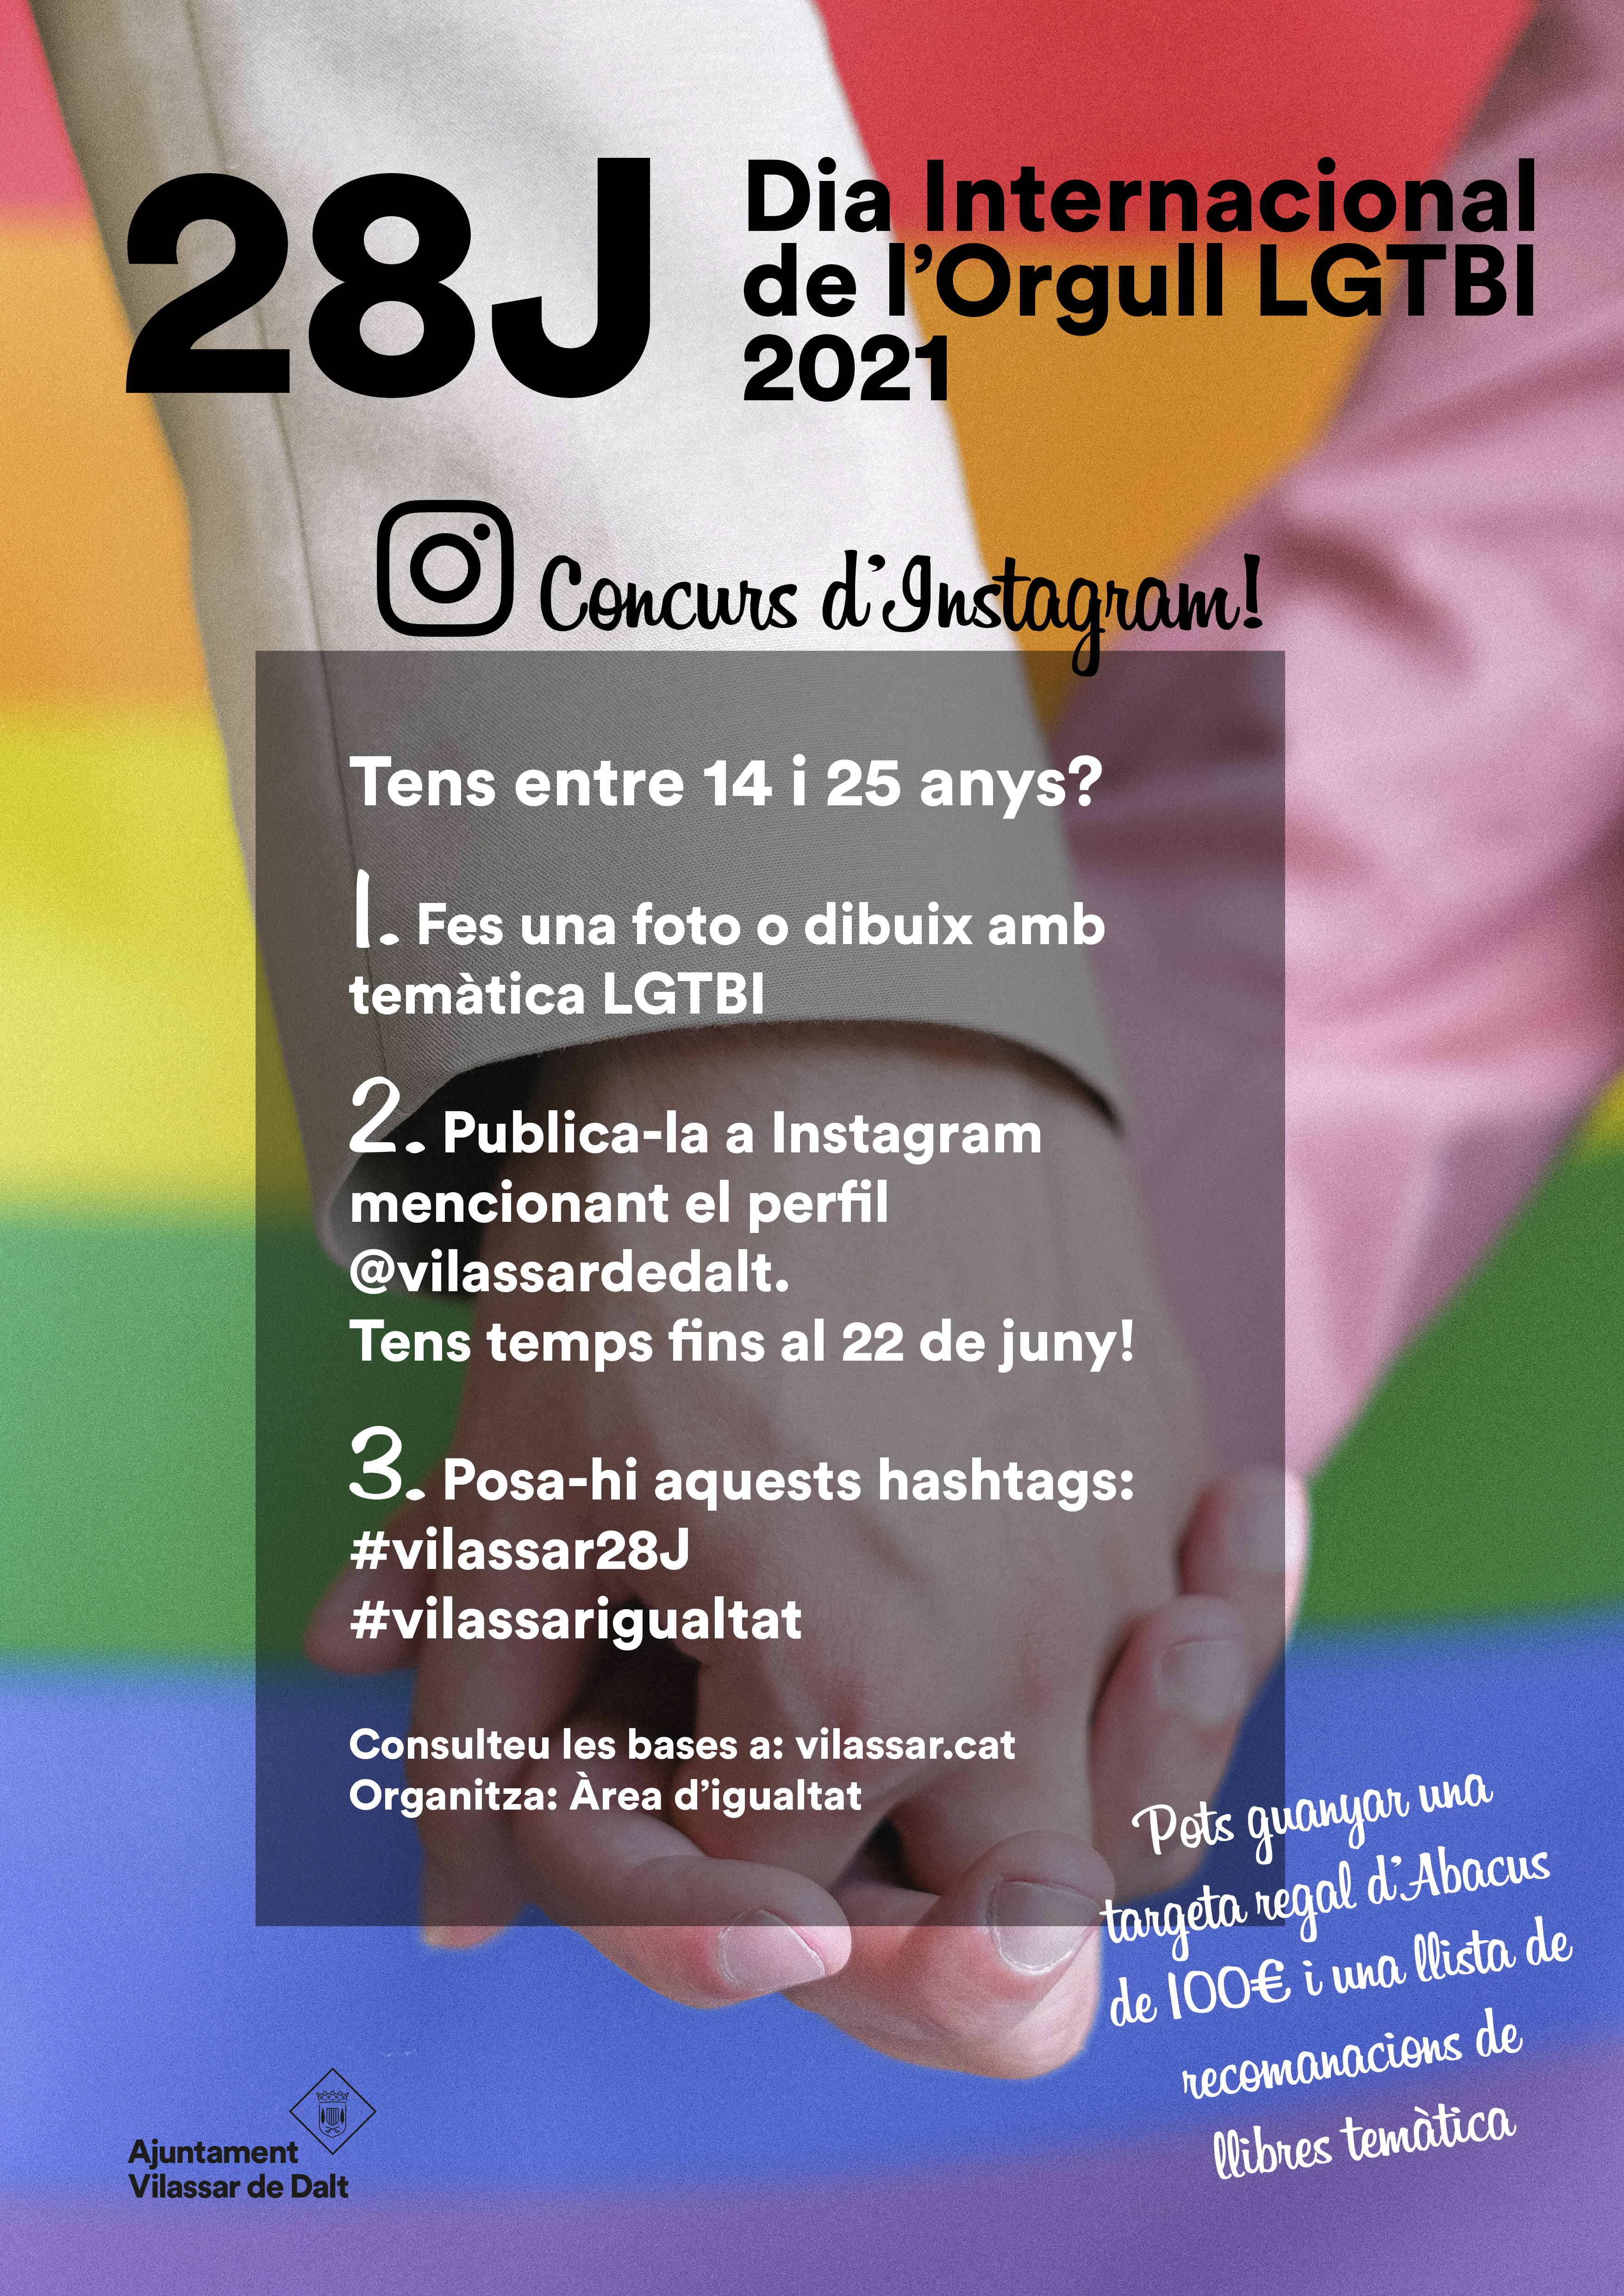 Concurs d'Instagram per commemorar el dia de l'Orgull LGTBI